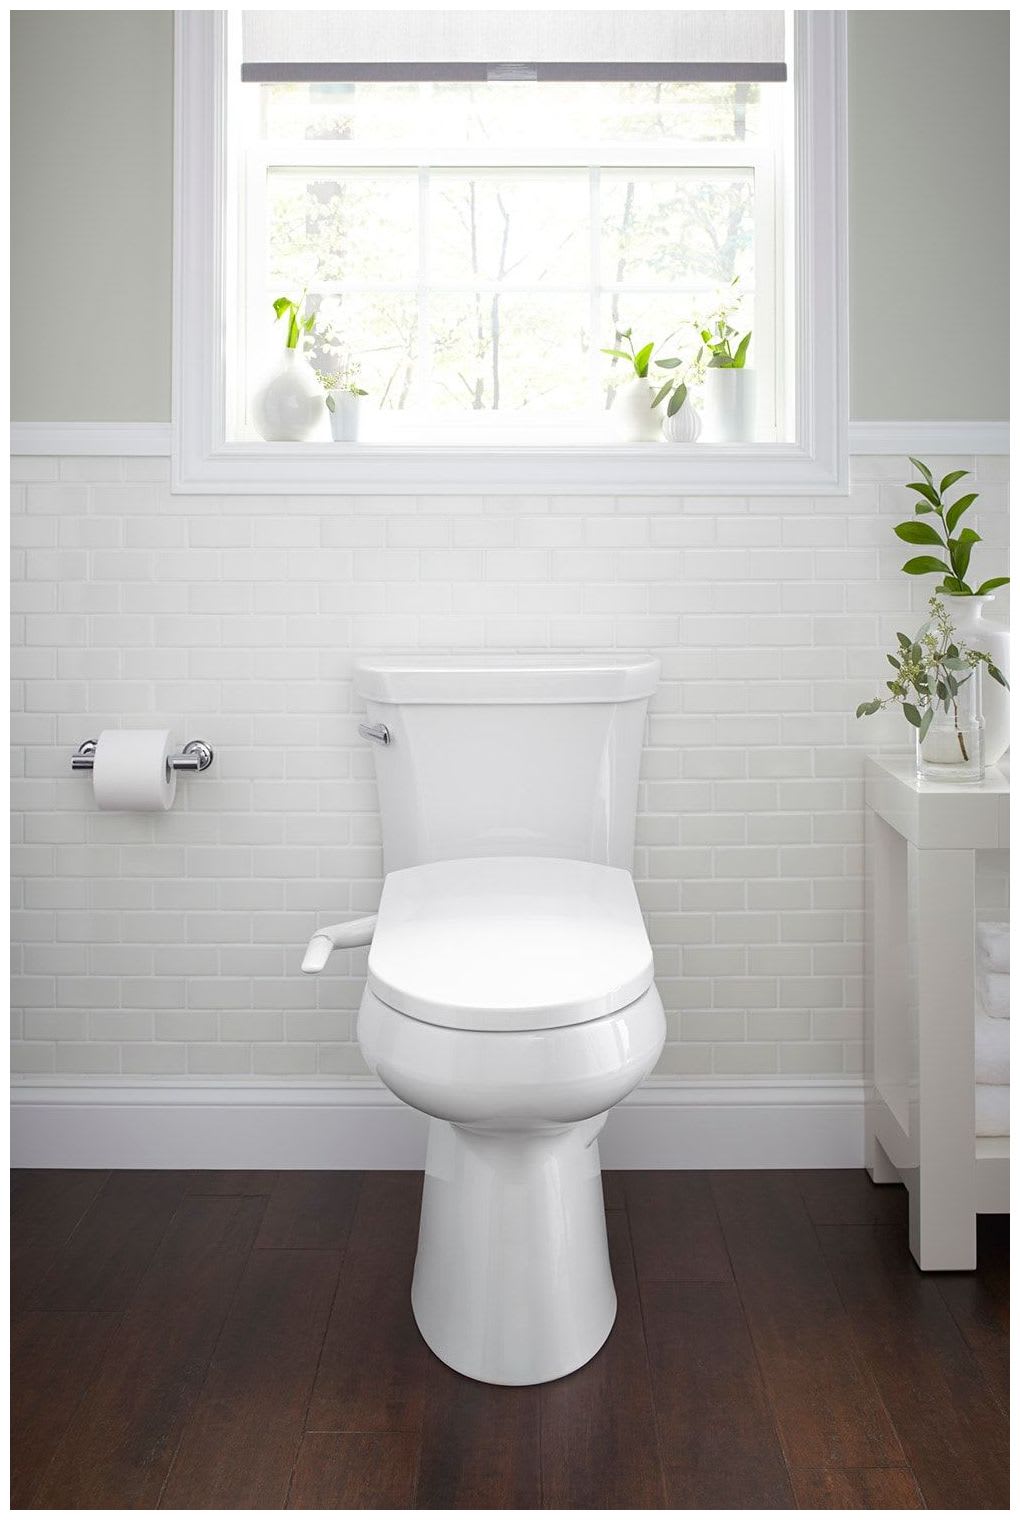 White for sale online Kohler K-5724-0 Elongated Manual Bidet Toilet Seat 